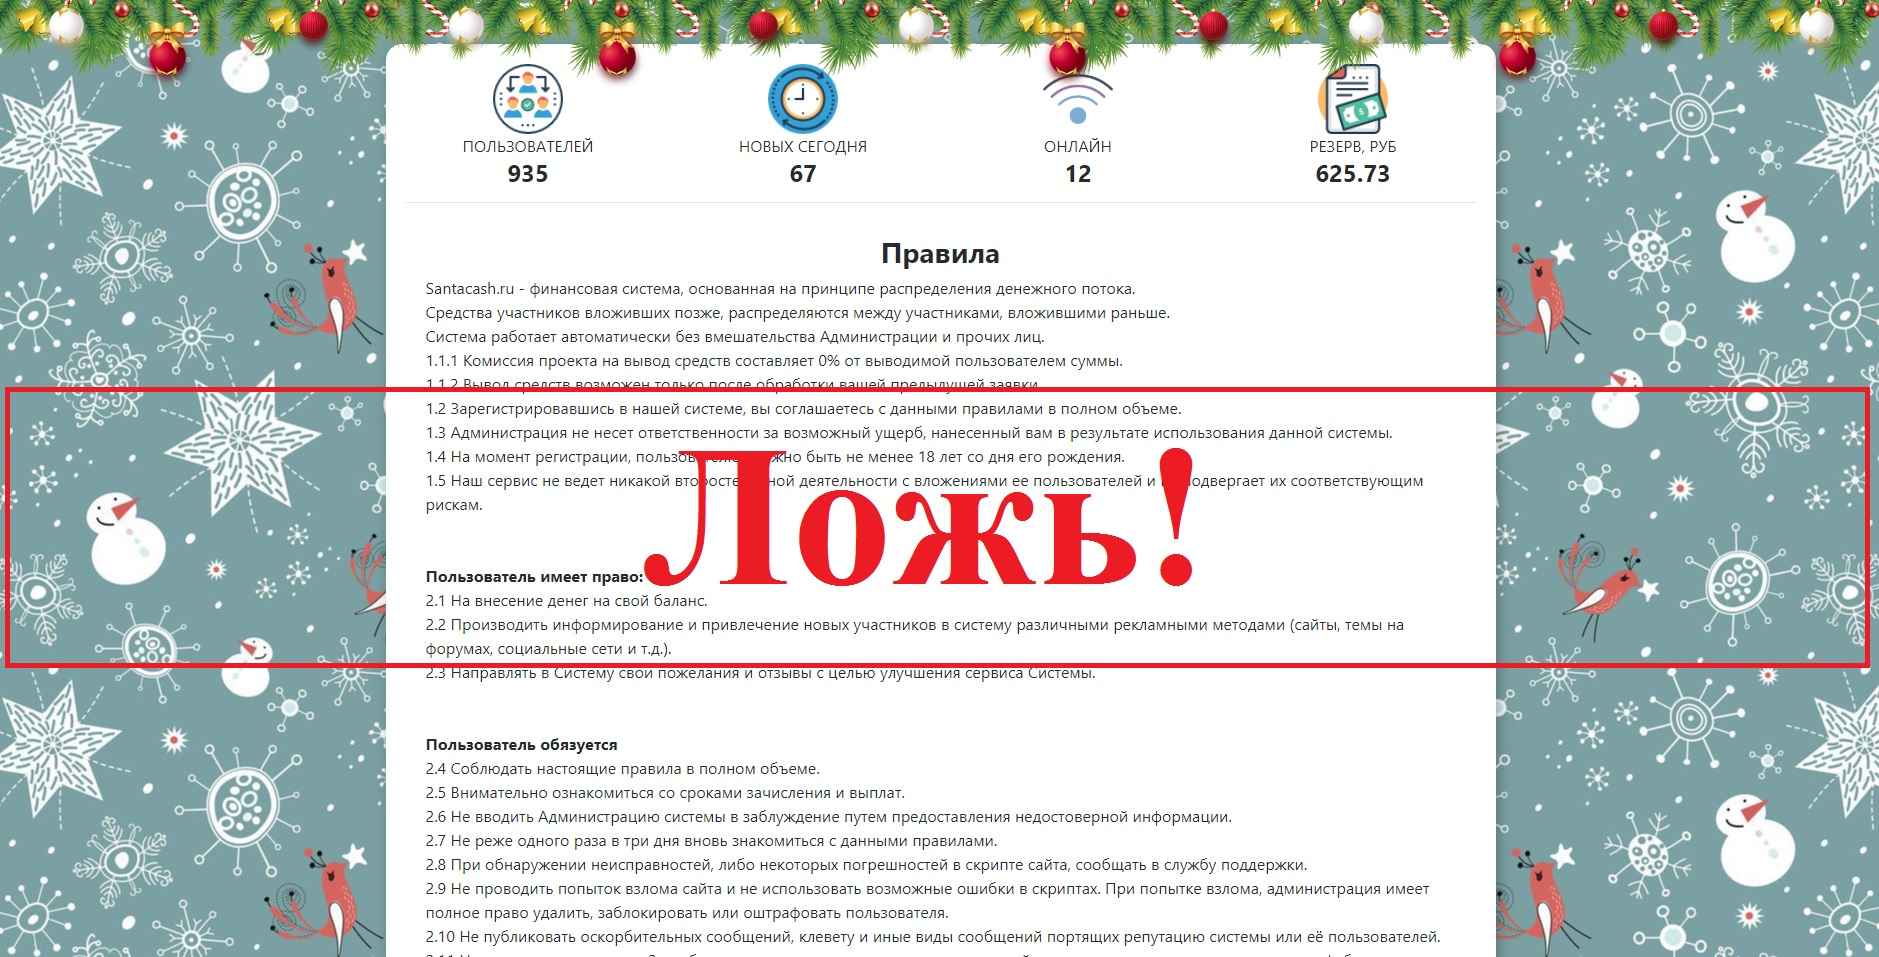 Santacash.ru – обзор и реальные отзывы